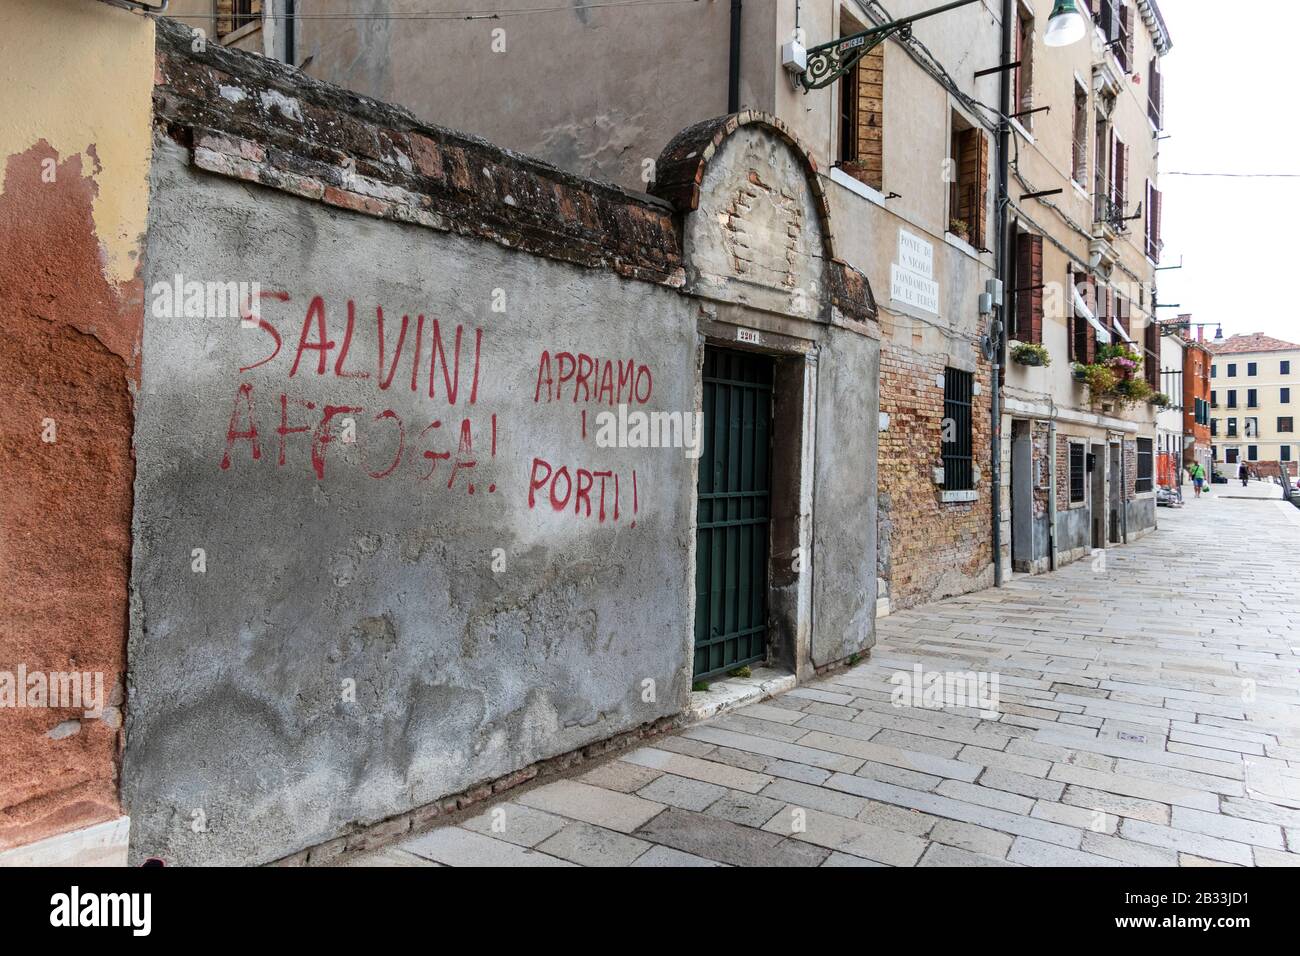 'alvini annega. Apriamo i graffiti dei porti per le strade di Venezia, l'Italia potrebbe fare riferimento alle politiche migratorie di Matteo Salvini Foto Stock